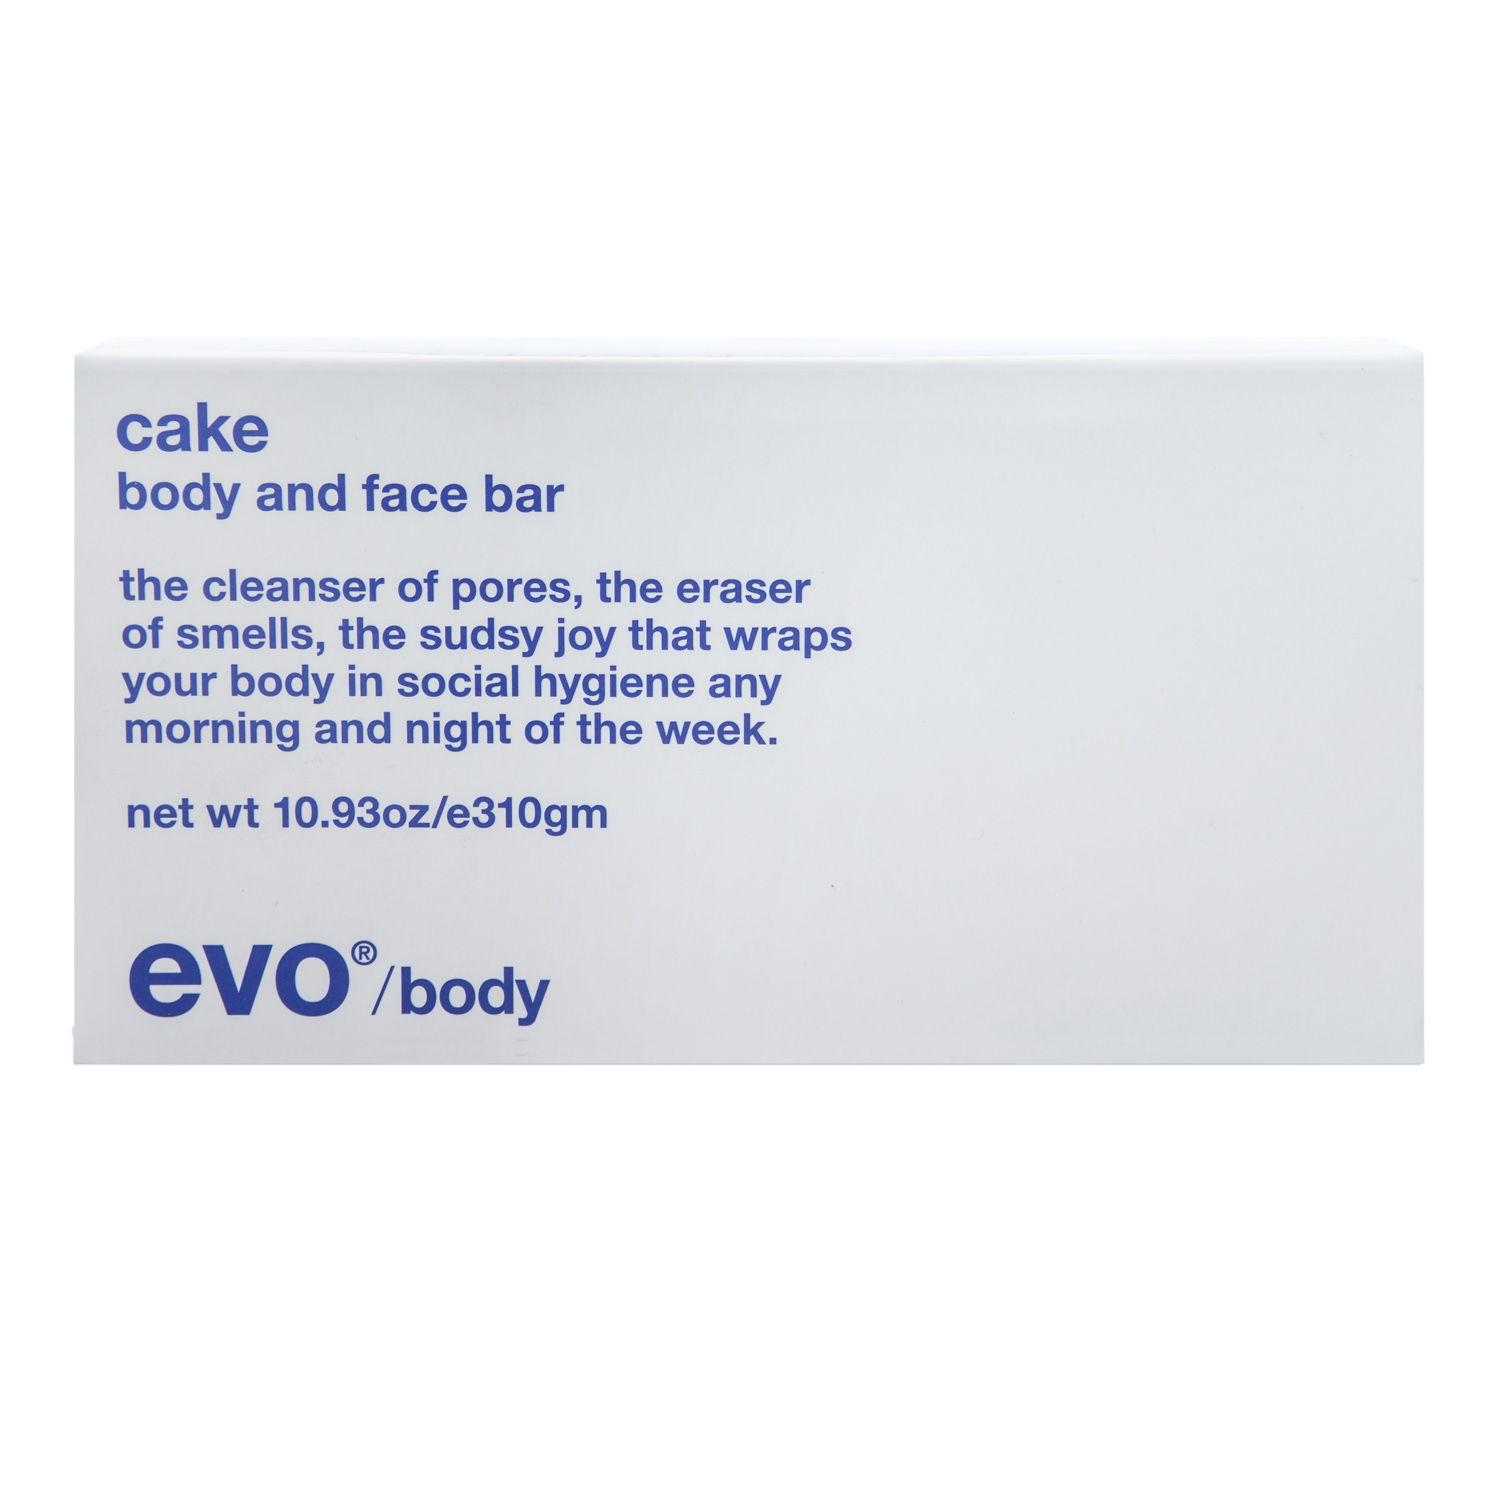 EVO Увлажняющее мыло [кусок] для лица и тела, 310 г (EVO, body and face) средства для ванной и душа evo [кусок] увлажняющее мыло для лица и тела cake body and face bar